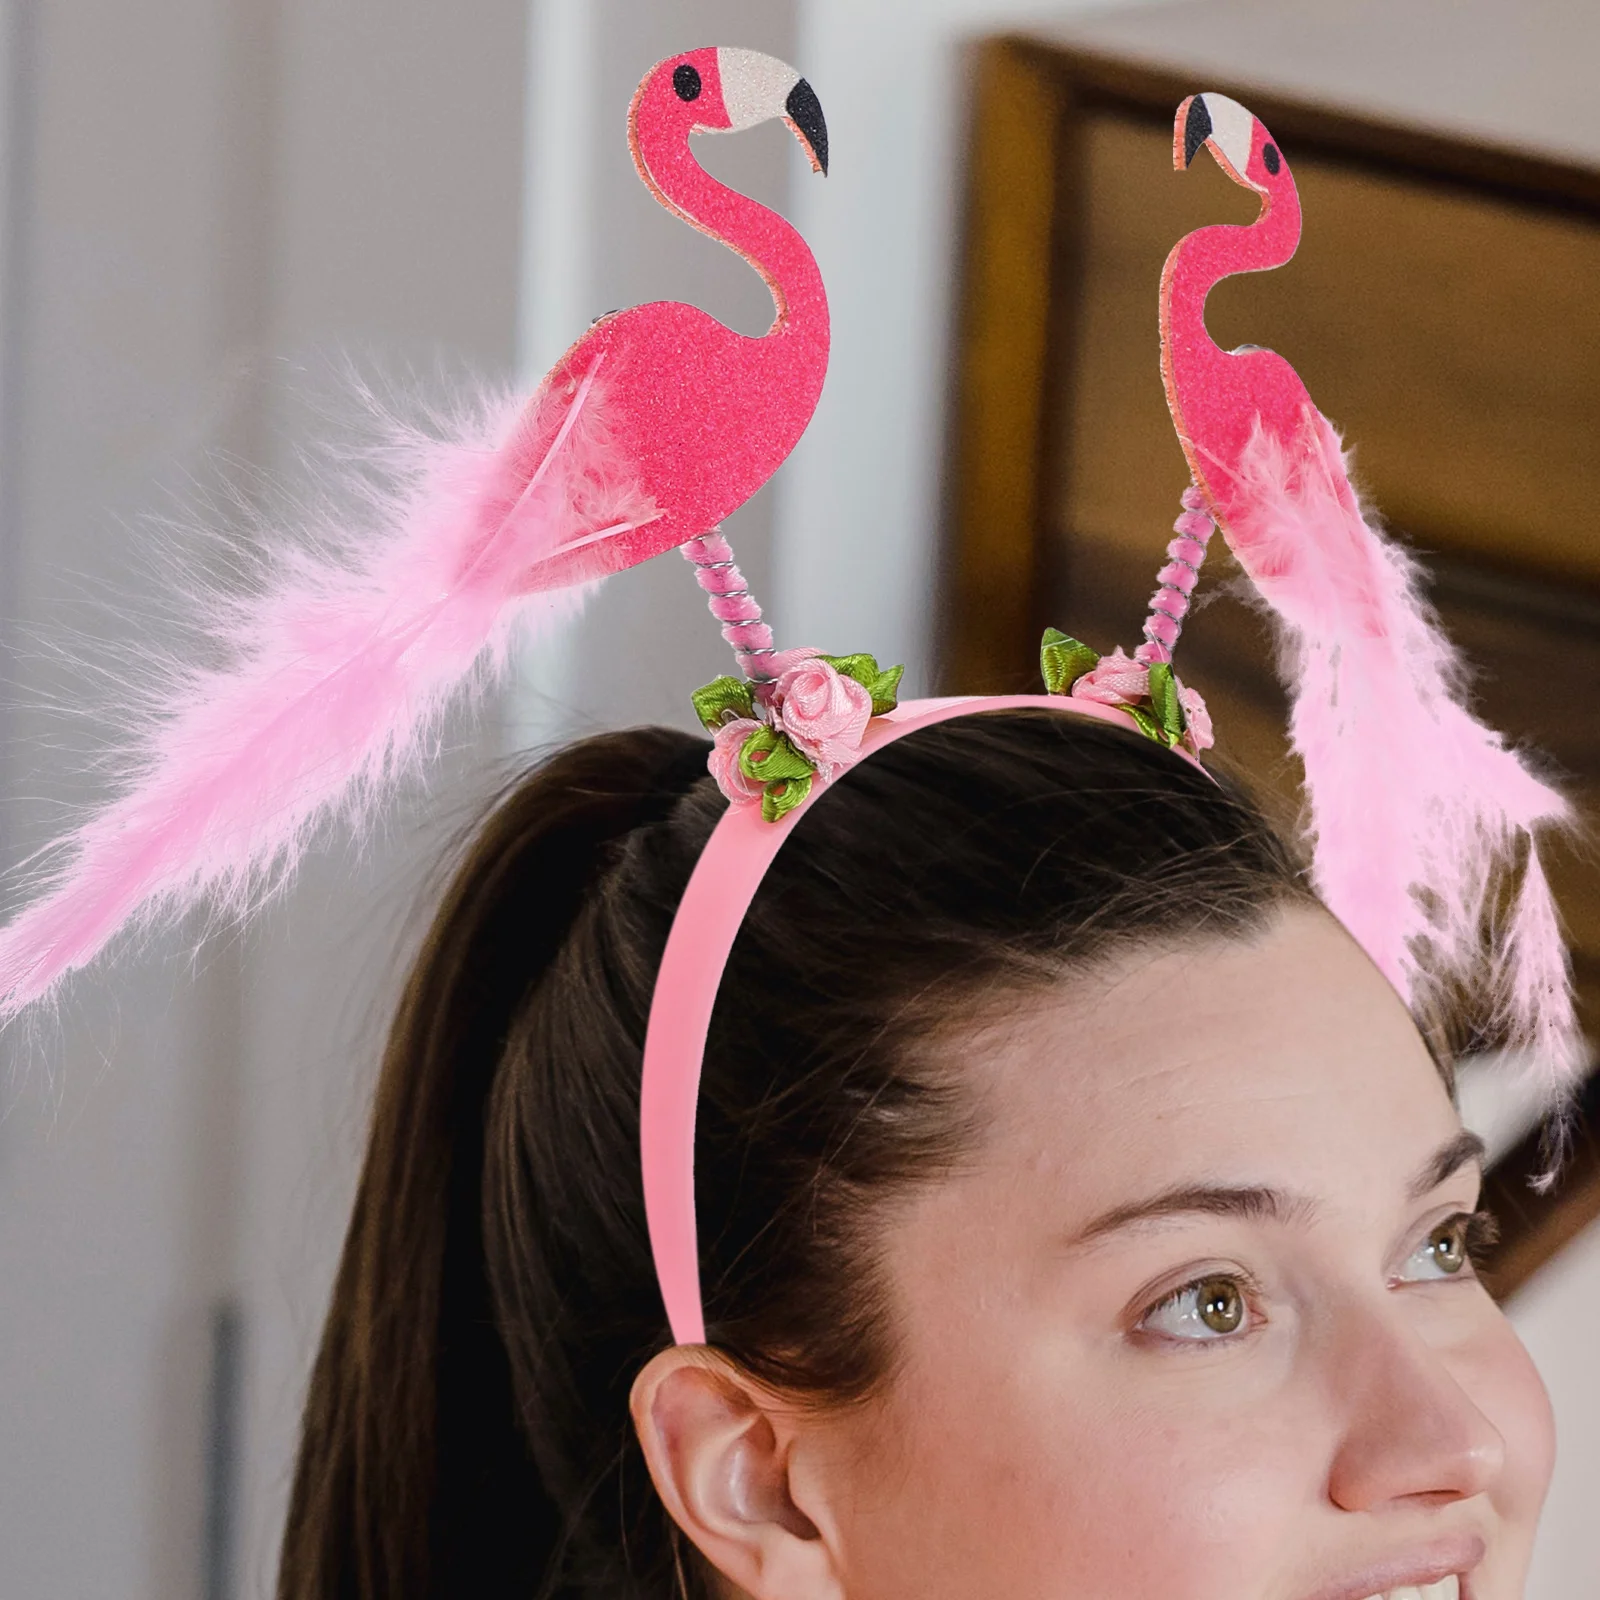 

Hawaii Party Favor Headband Tropical Headbands Luau Hawaiian Accessories Women Creative Flamingo Headdress